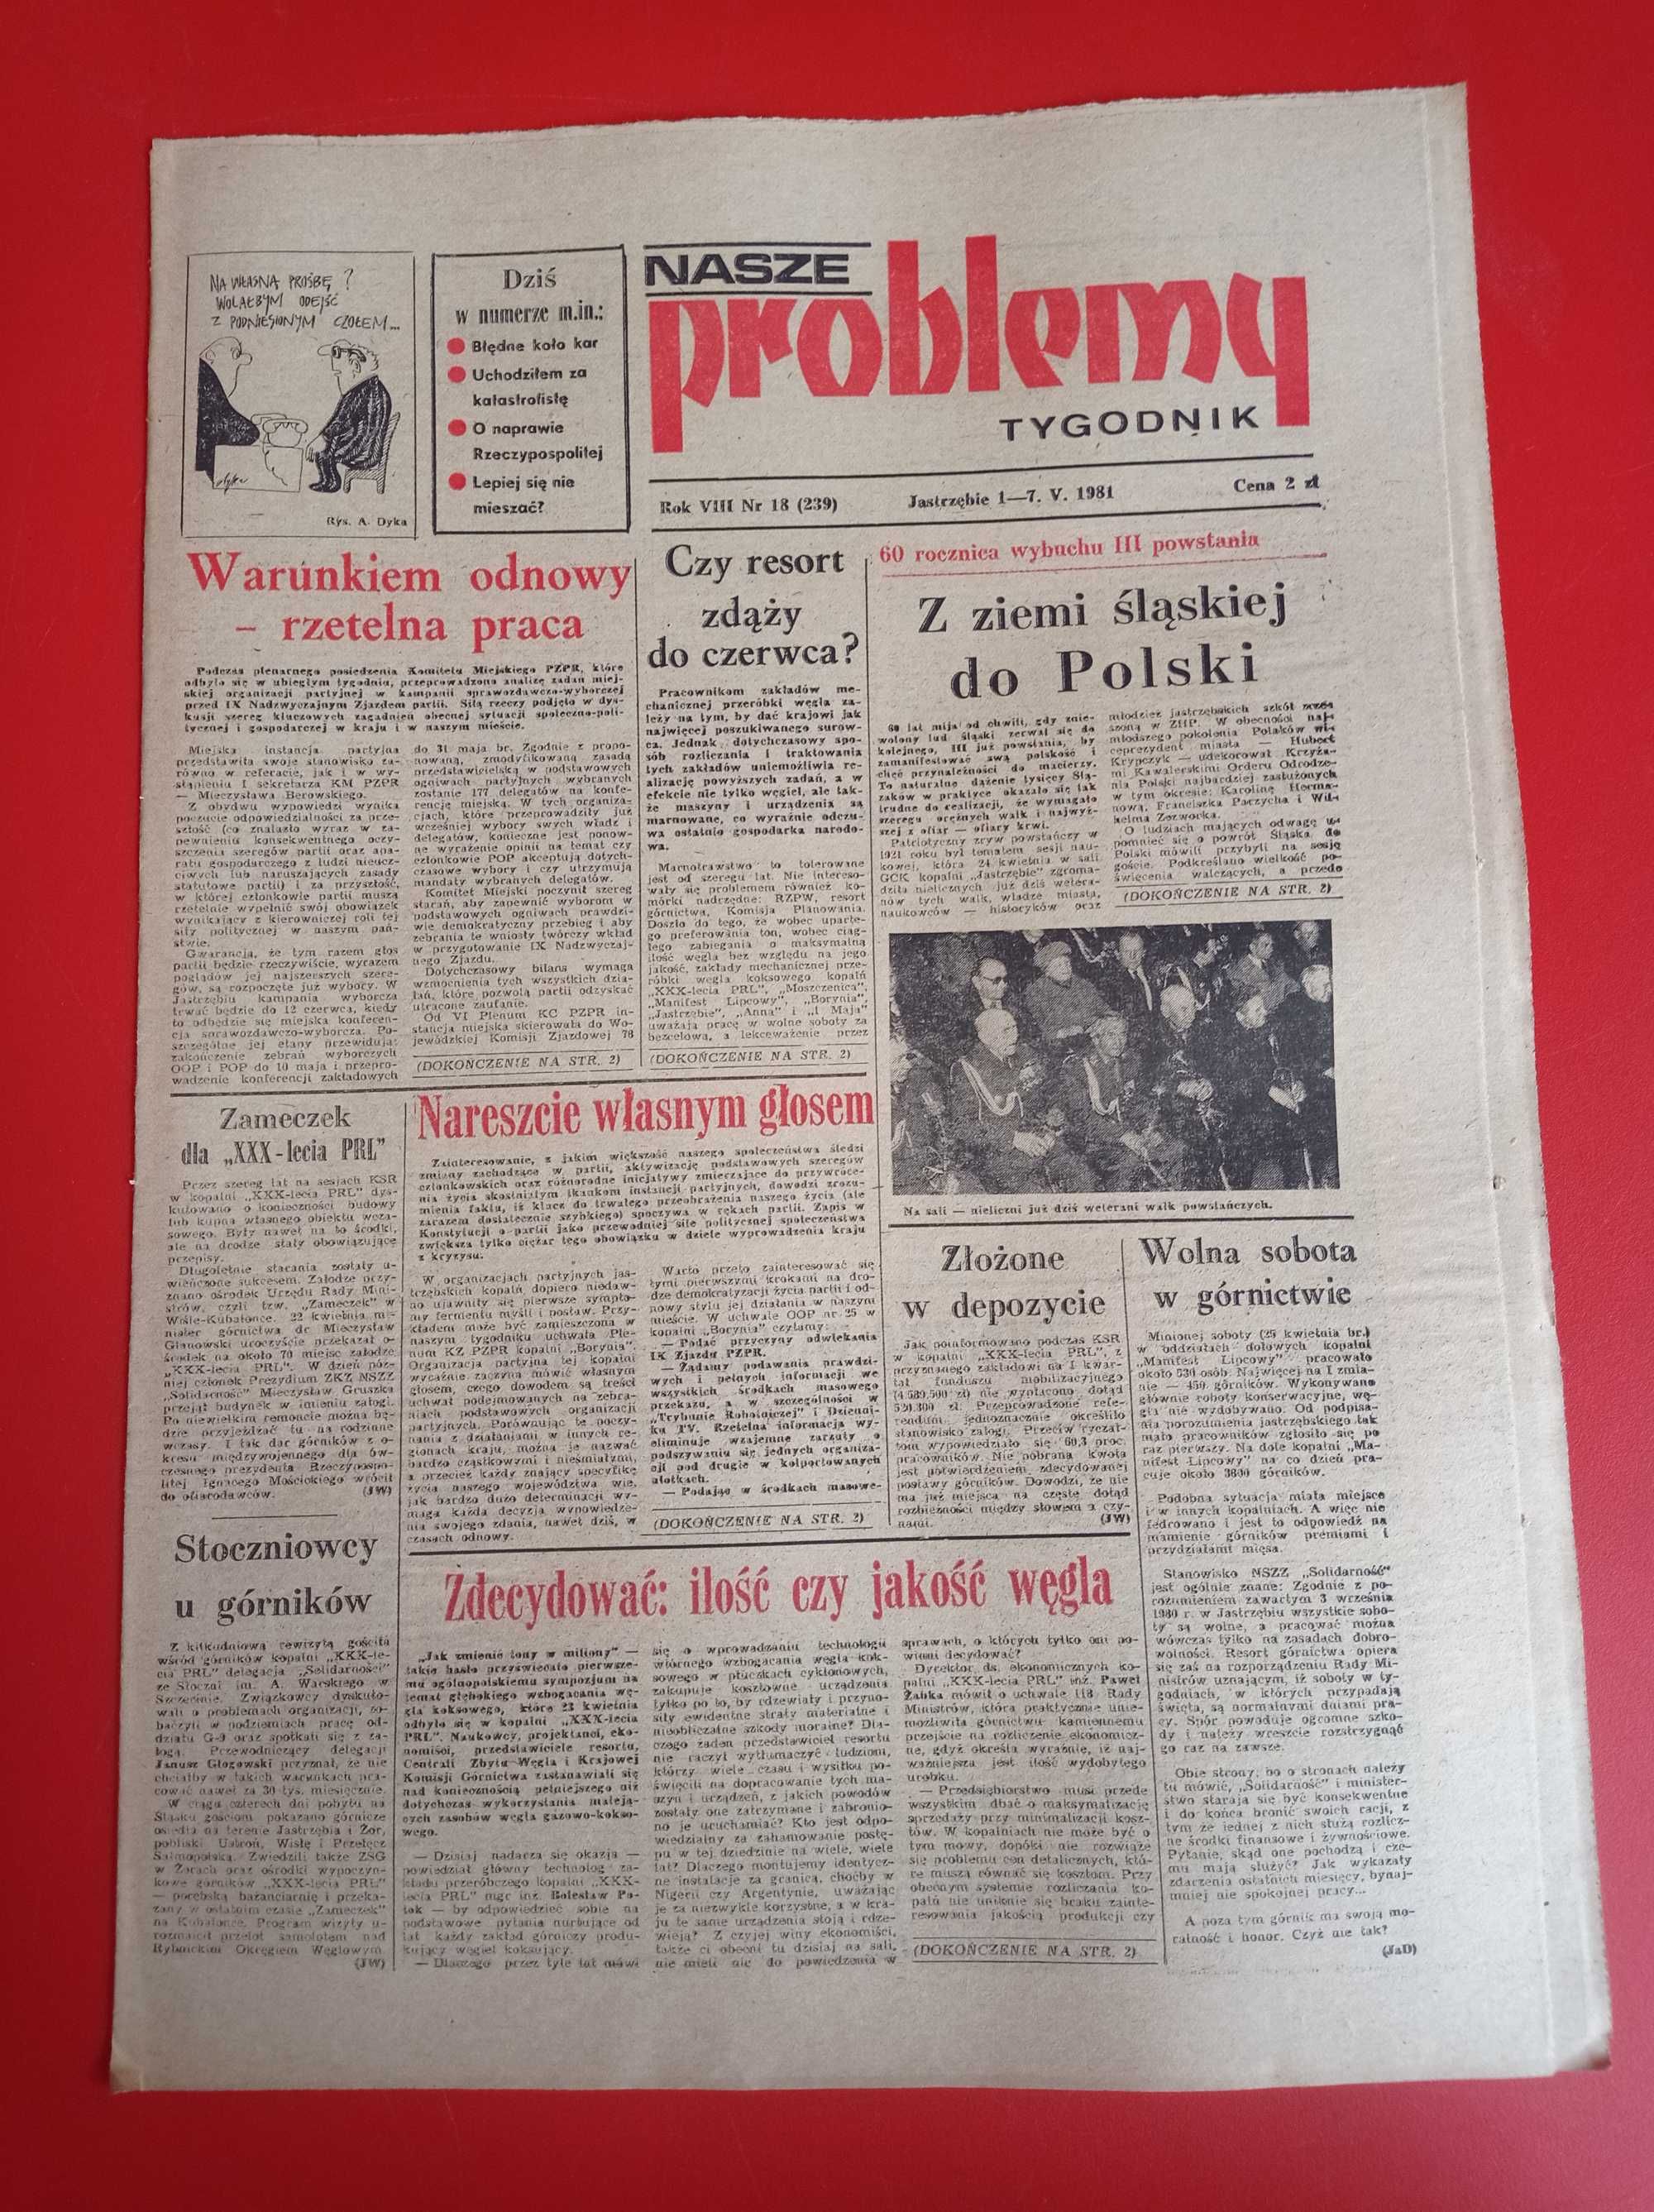 Nasze problemy, Jastrzębie, nr 18, 1-7 maja 1981